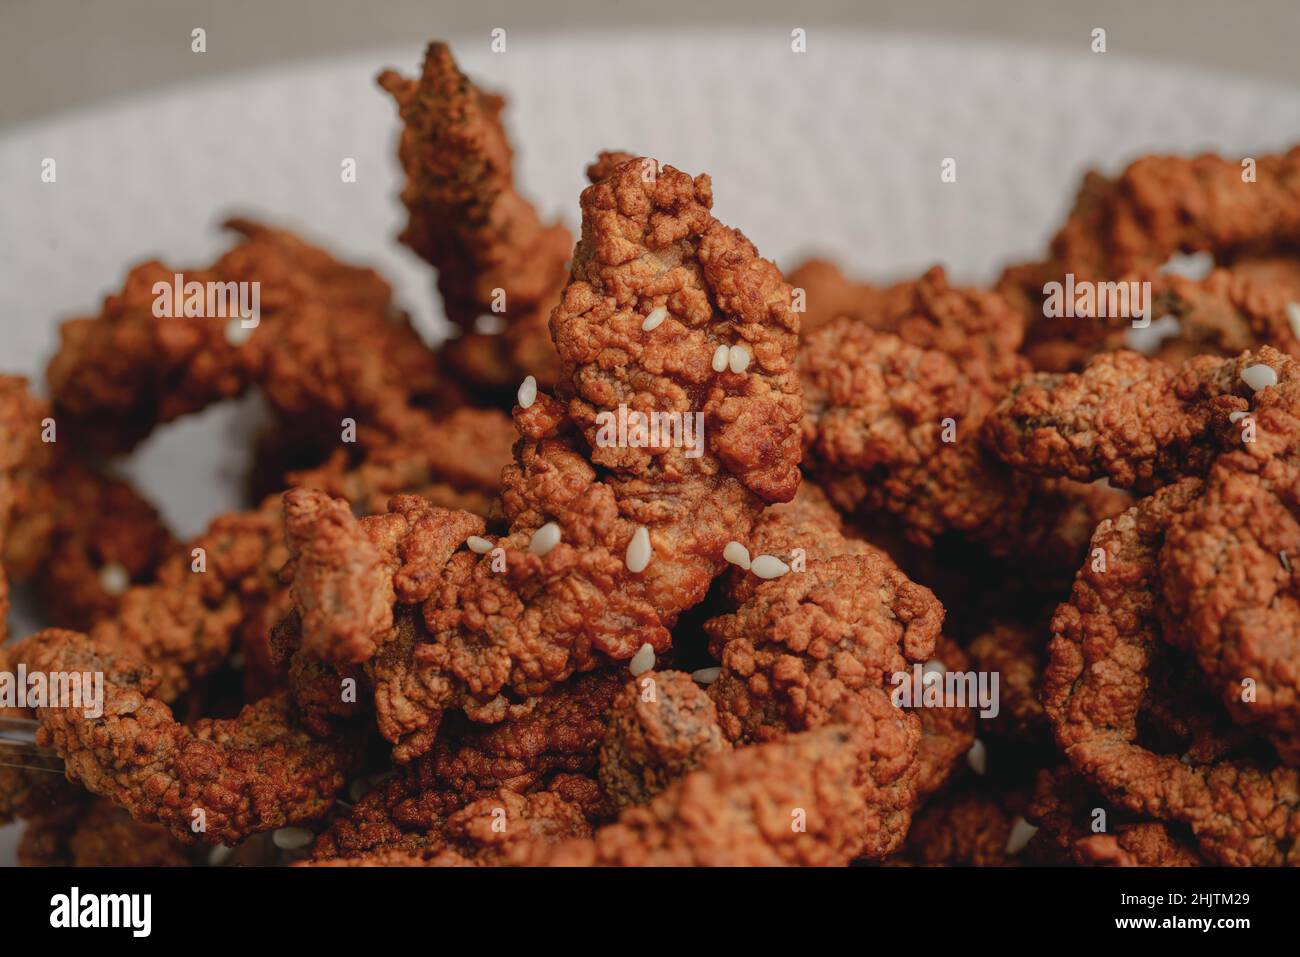 Süßes und knuspriges Rindfleisch mit Sesam oder knusprigem Huhn  Stockfotografie - Alamy